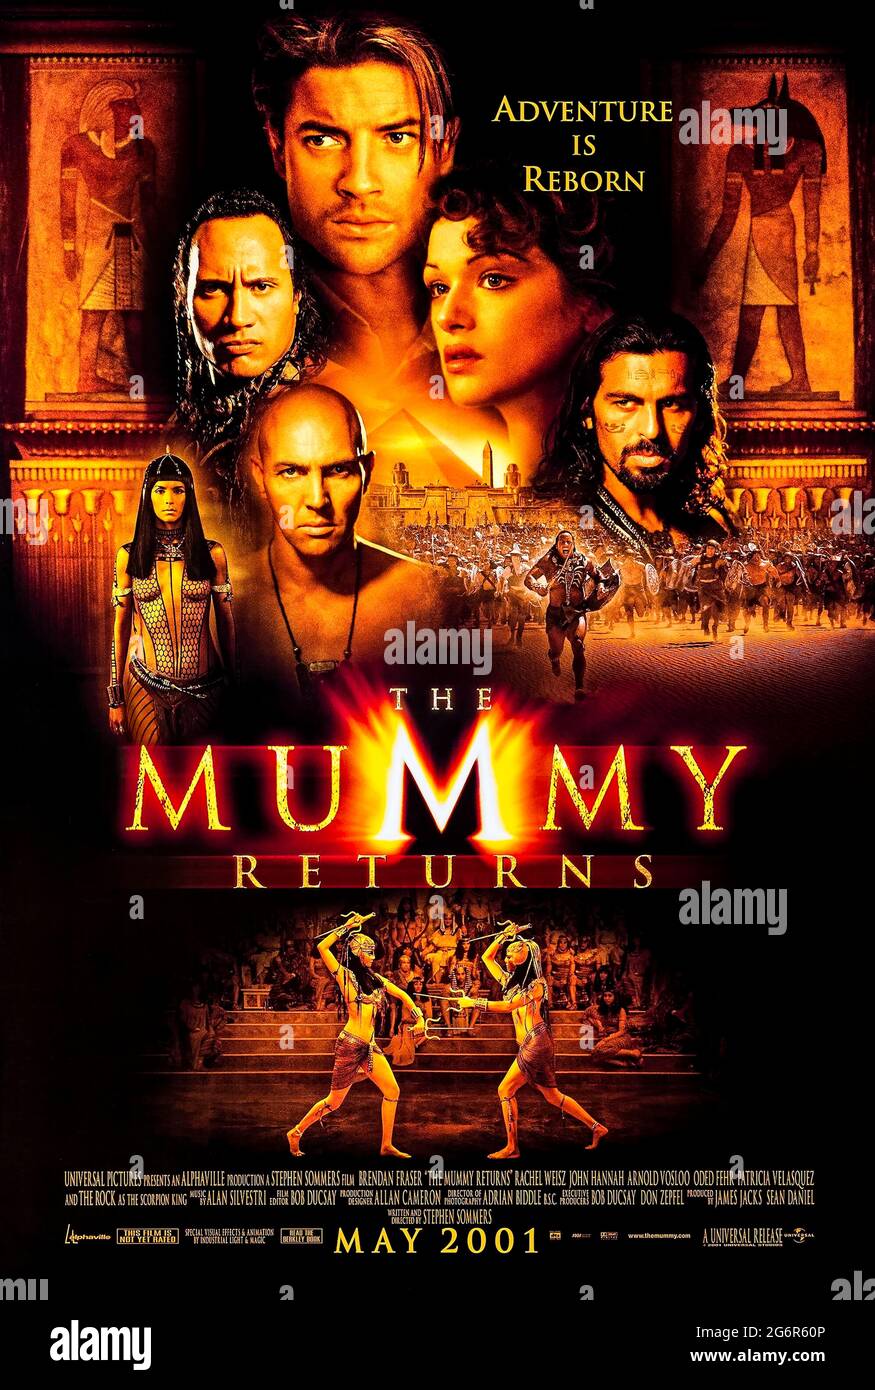 The Mummy Returns (2001) unter der Regie von Stephen Sommers mit Brendan Fraser, Rachel Weisz, Arnold Vosloo und John Hannah. Die mumifizierte Leiche von Imhotep wird in ein Museum in London verschifft, wo er wieder aufwacht und seine Kampagne der Wut und des Terrors beginnt. Stockfoto